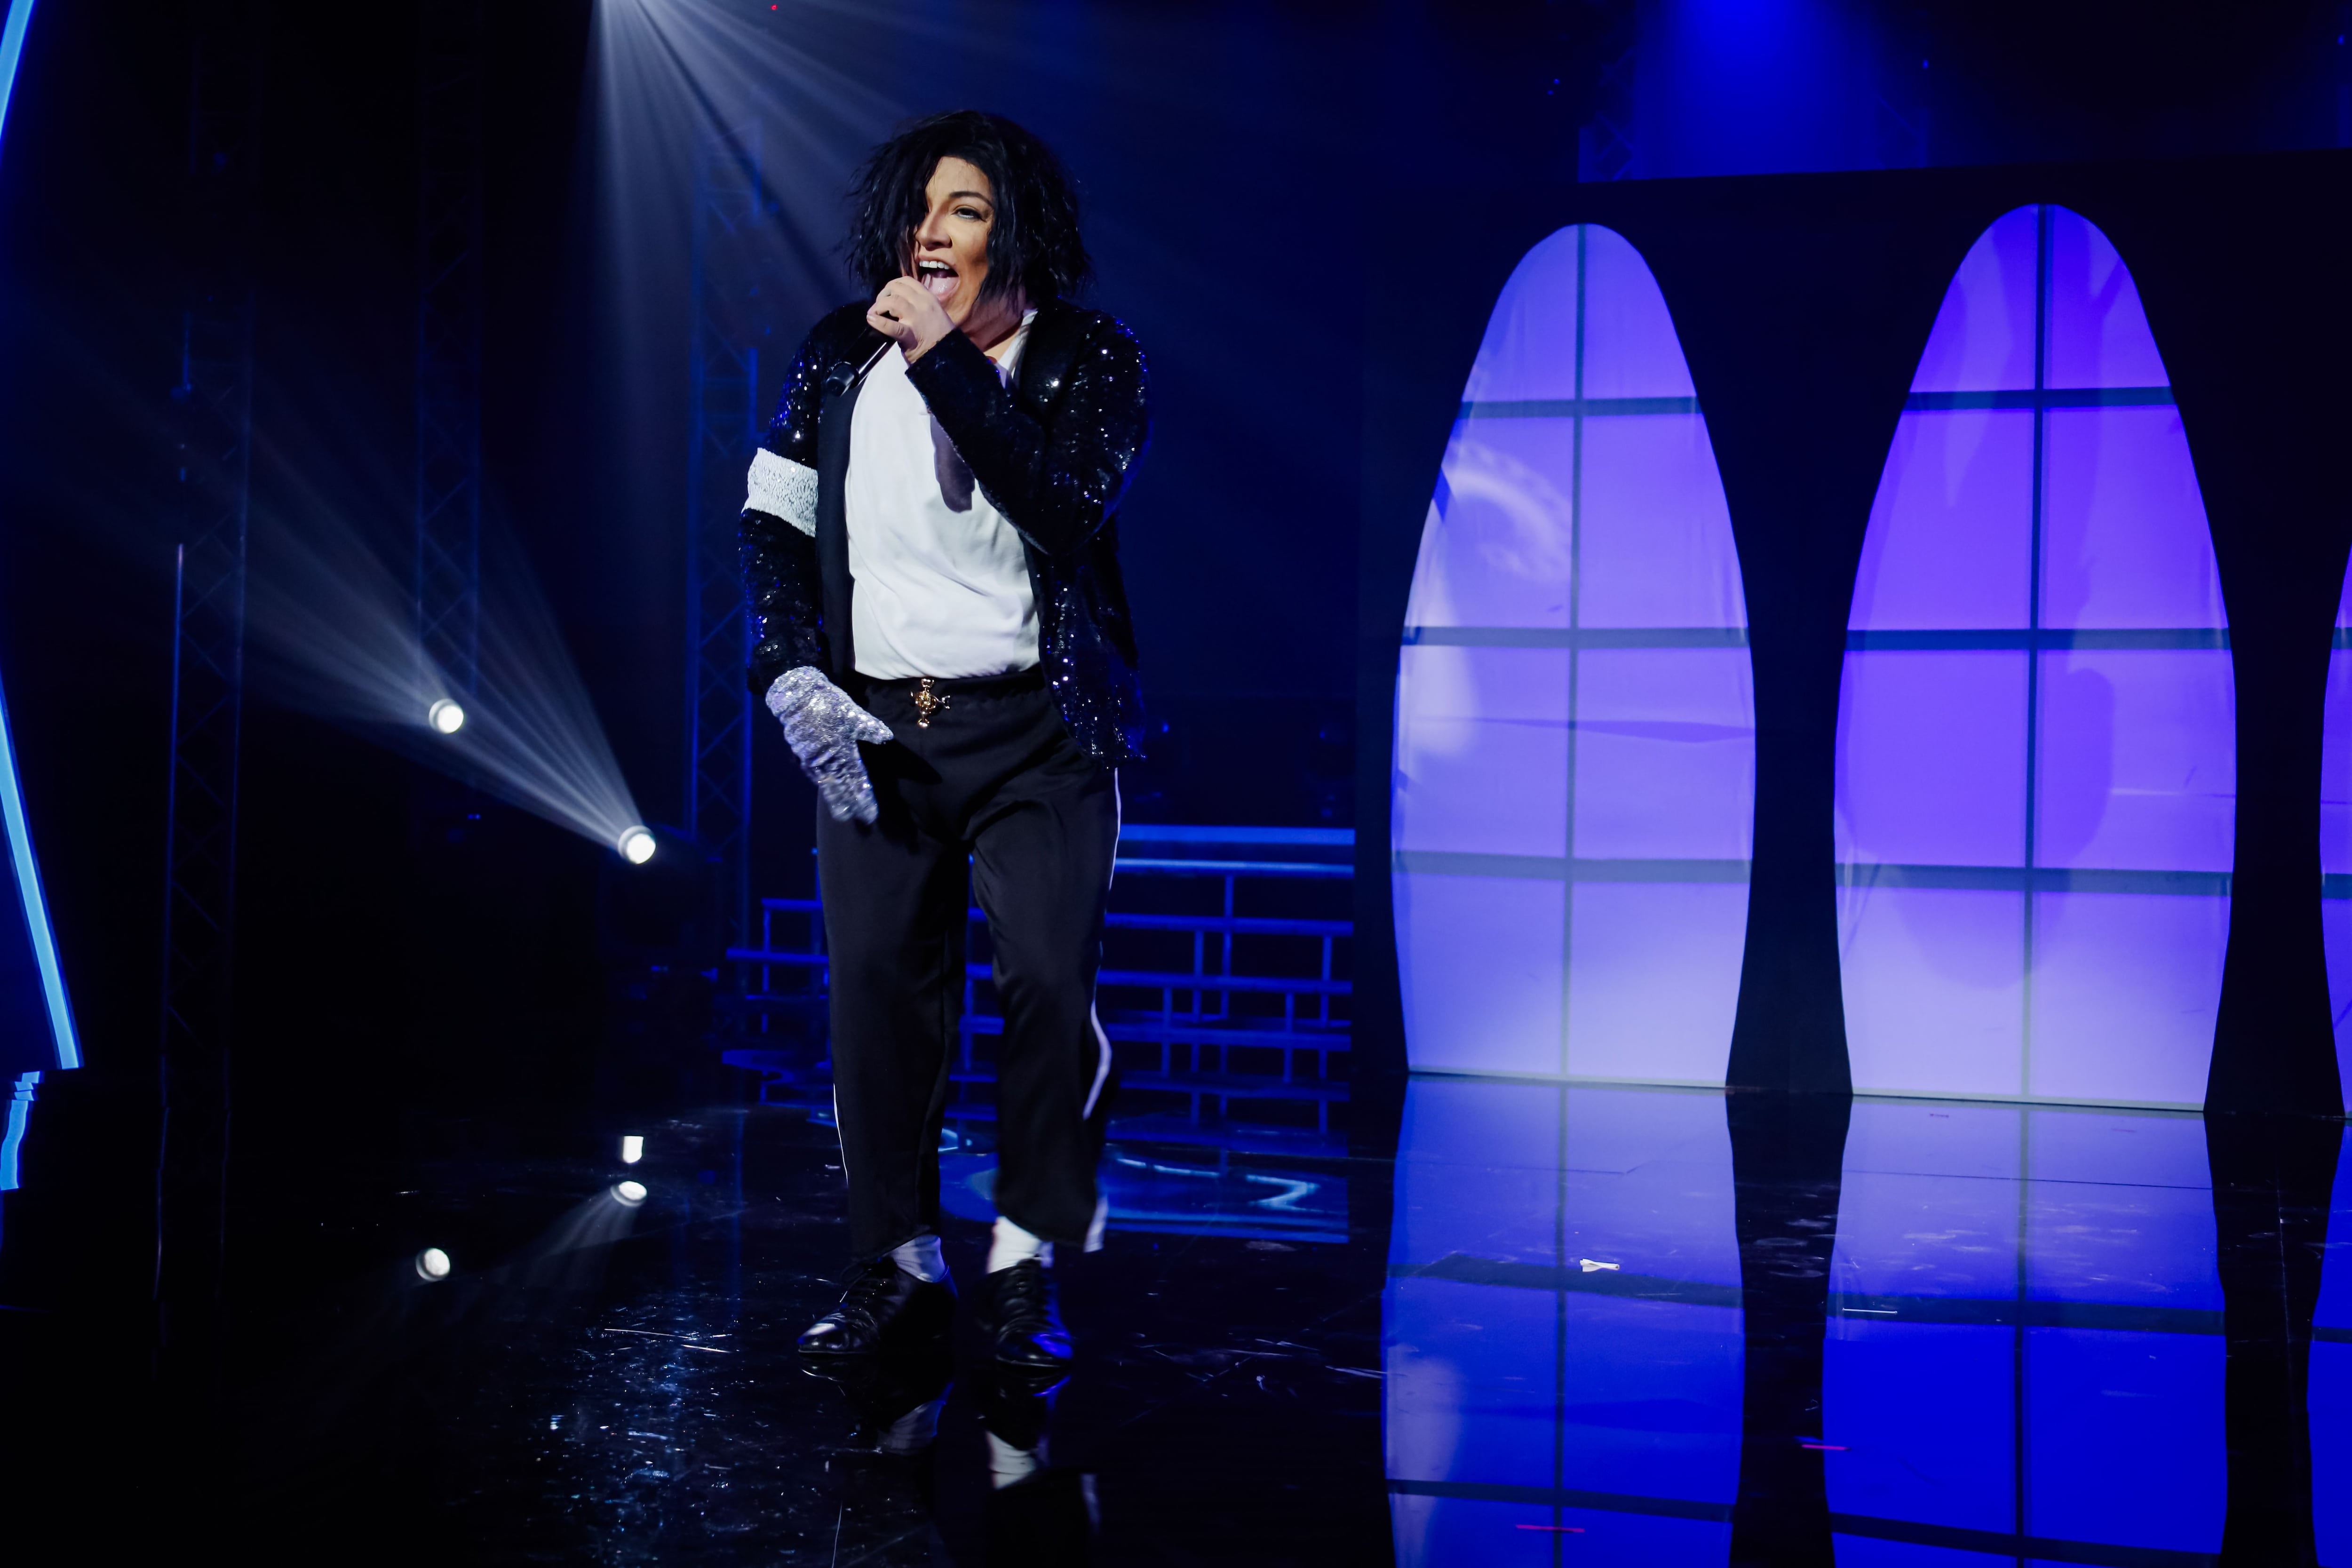 Alita Salazar hizo del Rey del pop, Michael Jackson. Para el jurado, la cantante se esforzó.